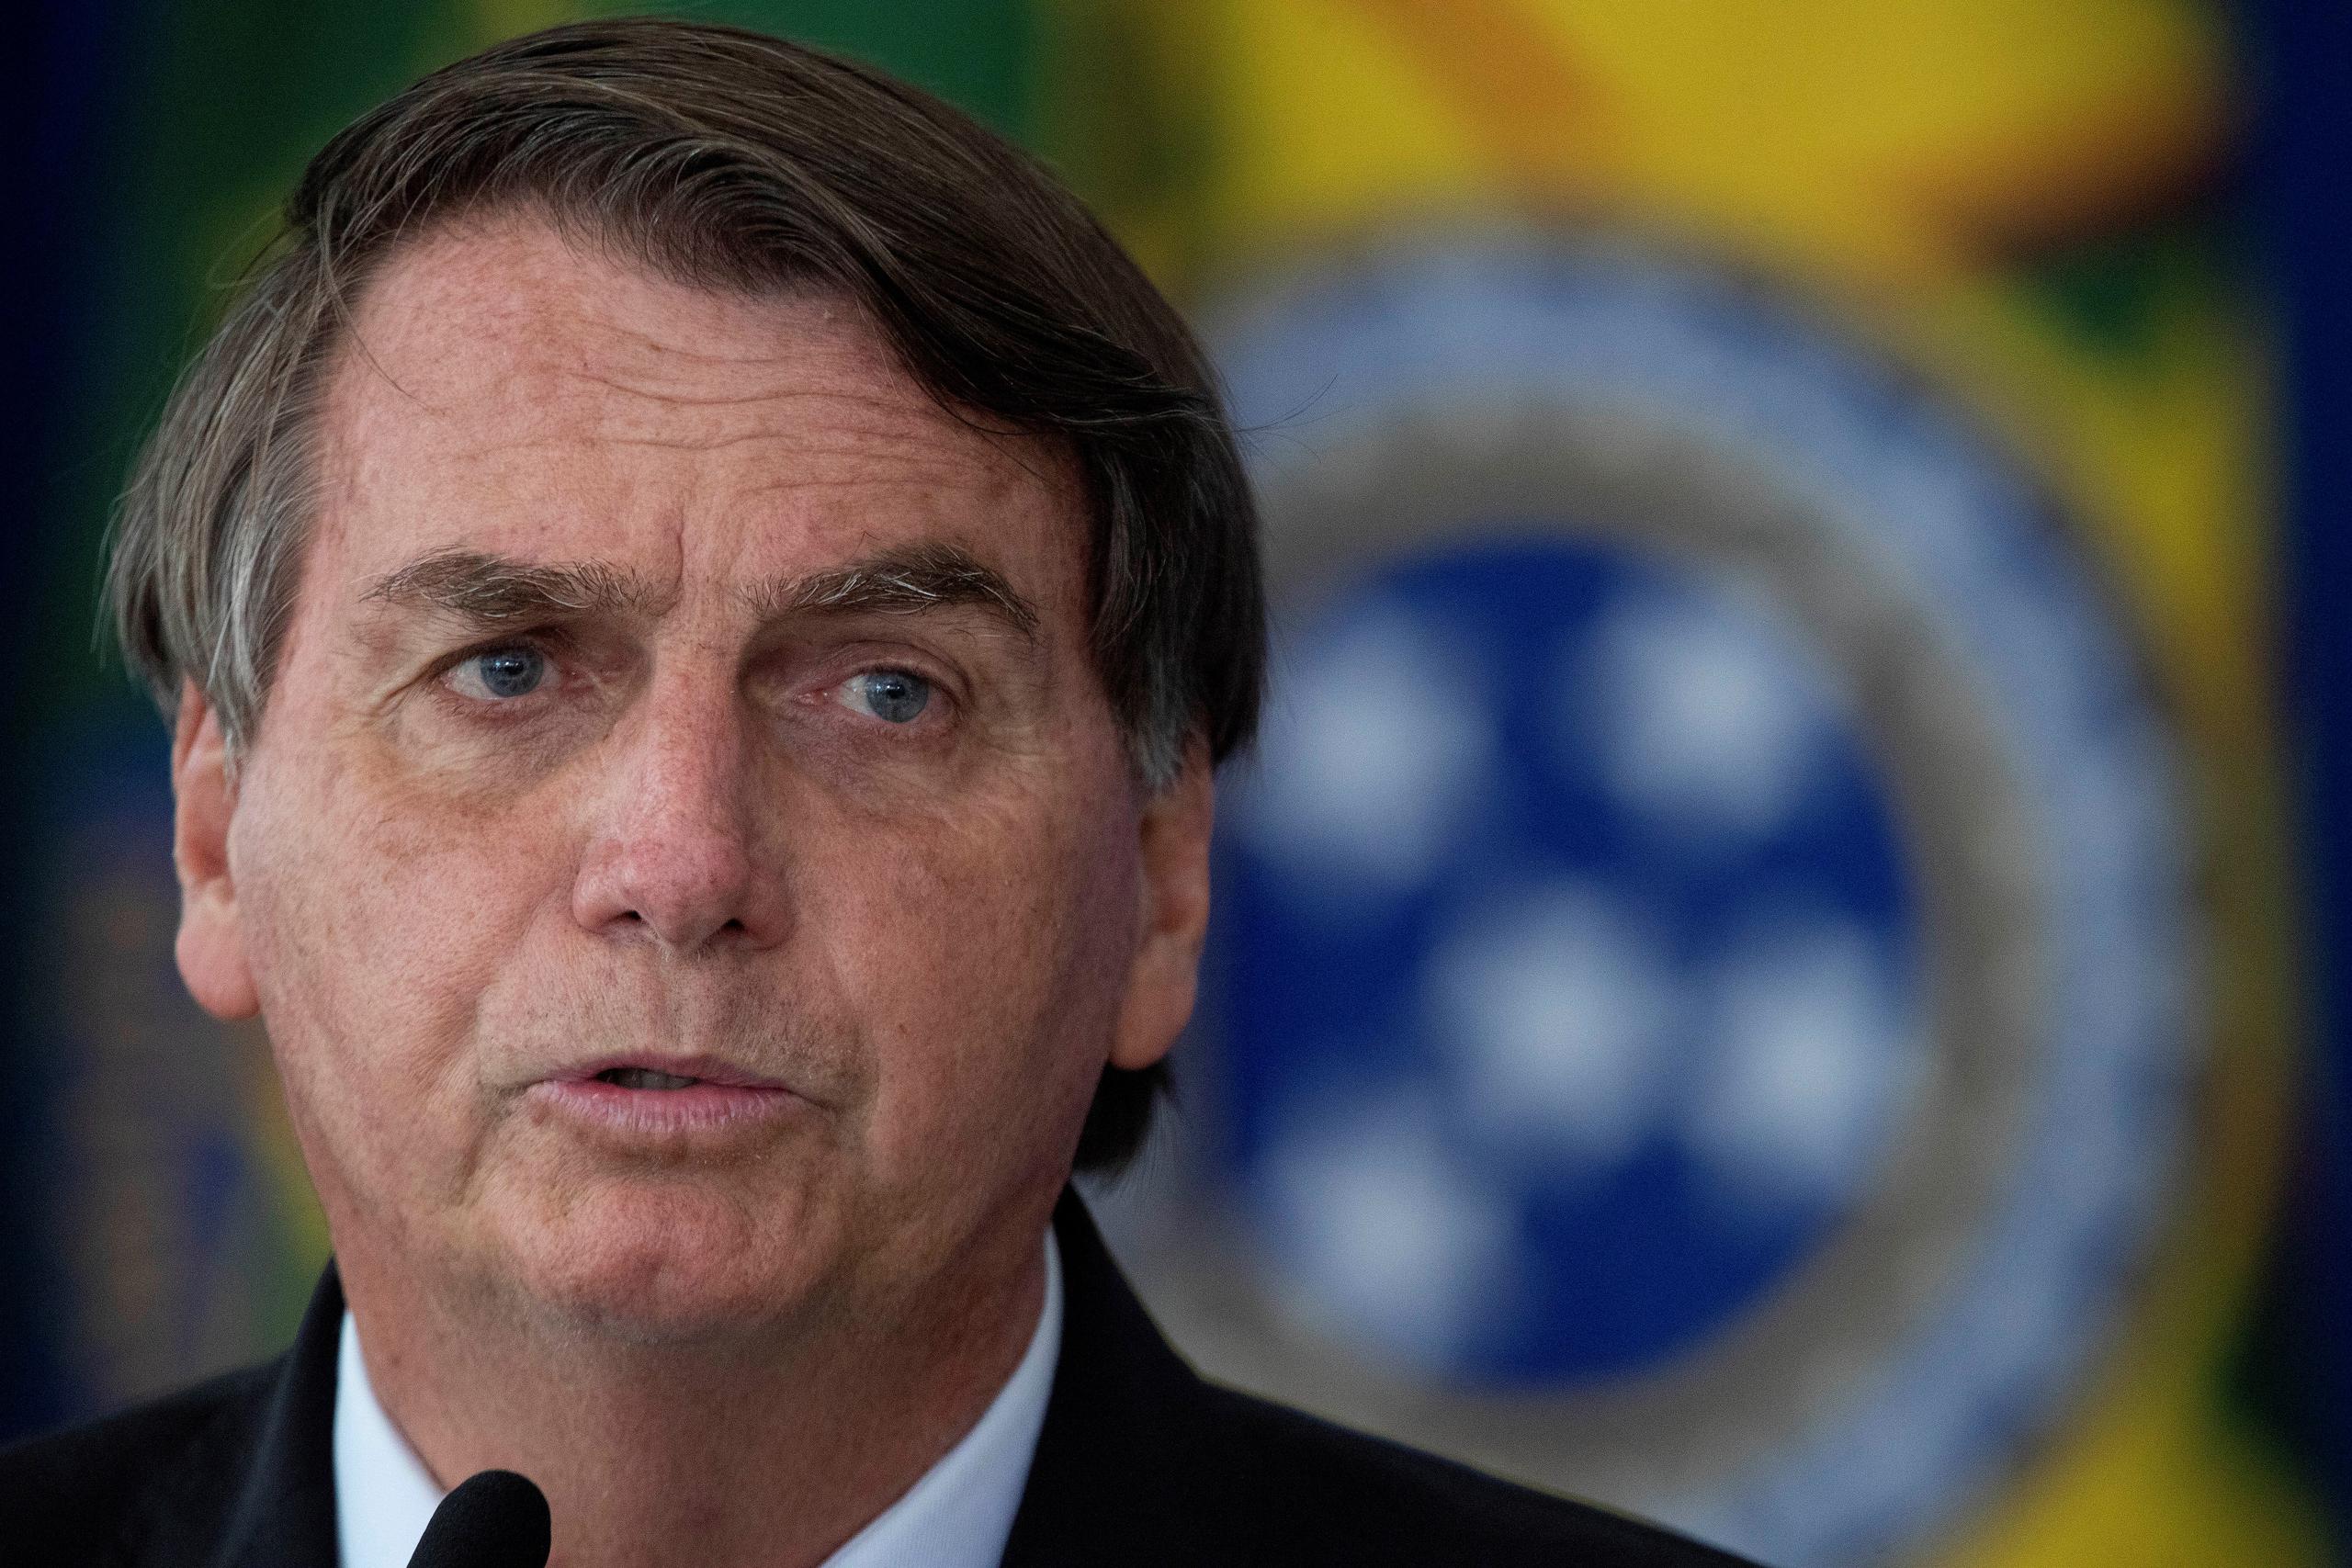 El presidente de Brasil, Jair Bolsonaro, reiteró su negativa a considerar confinamientos como medida preventiva contra el virus.